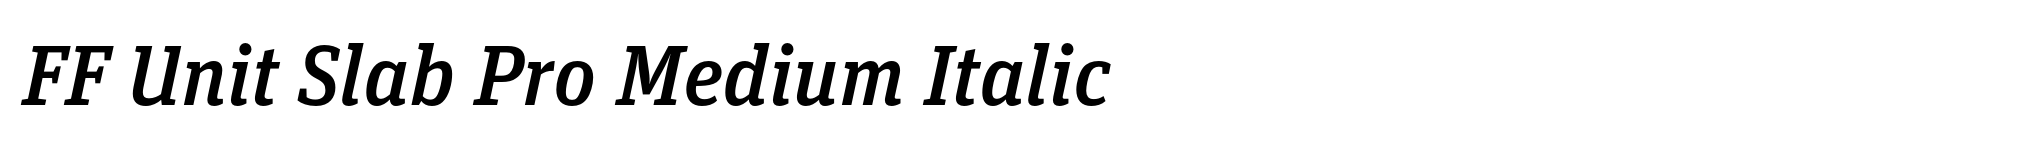 FF Unit Slab Pro Medium Italic image